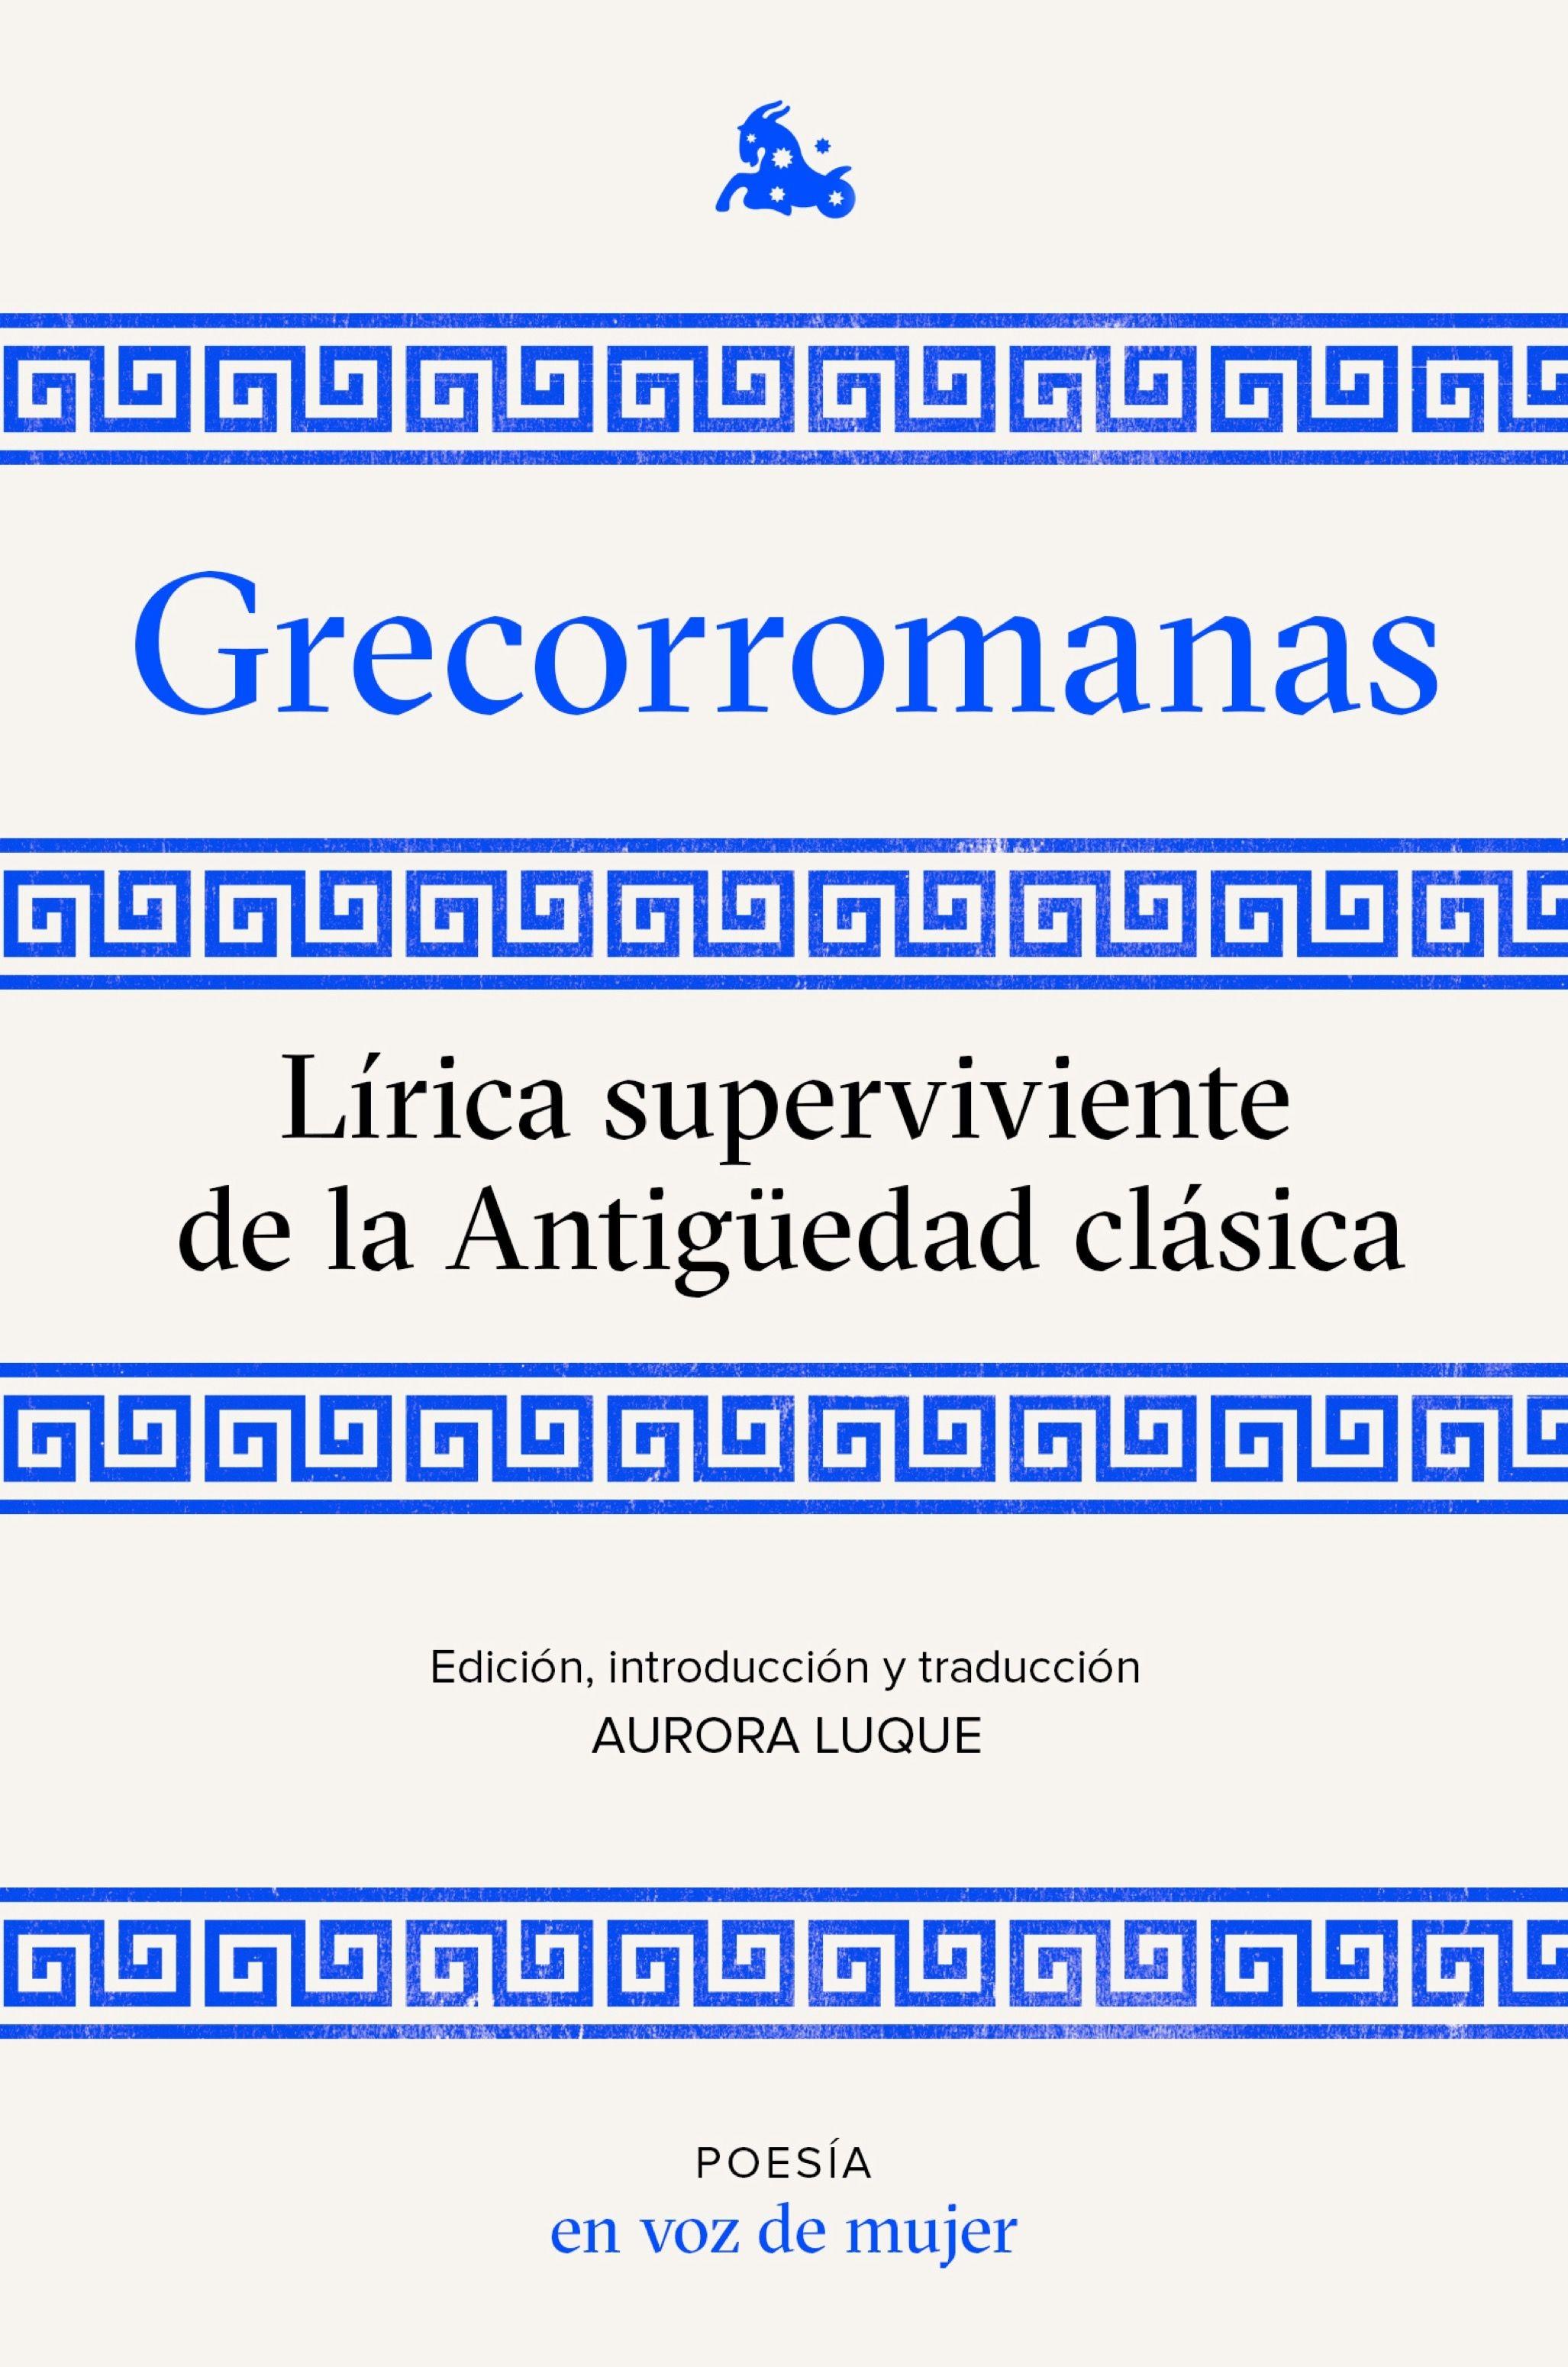 Grecorromanas. Lírica superviviente de la Antigüedad clásica "Edición, introducción y traducción a cargo de Aurora Luque"